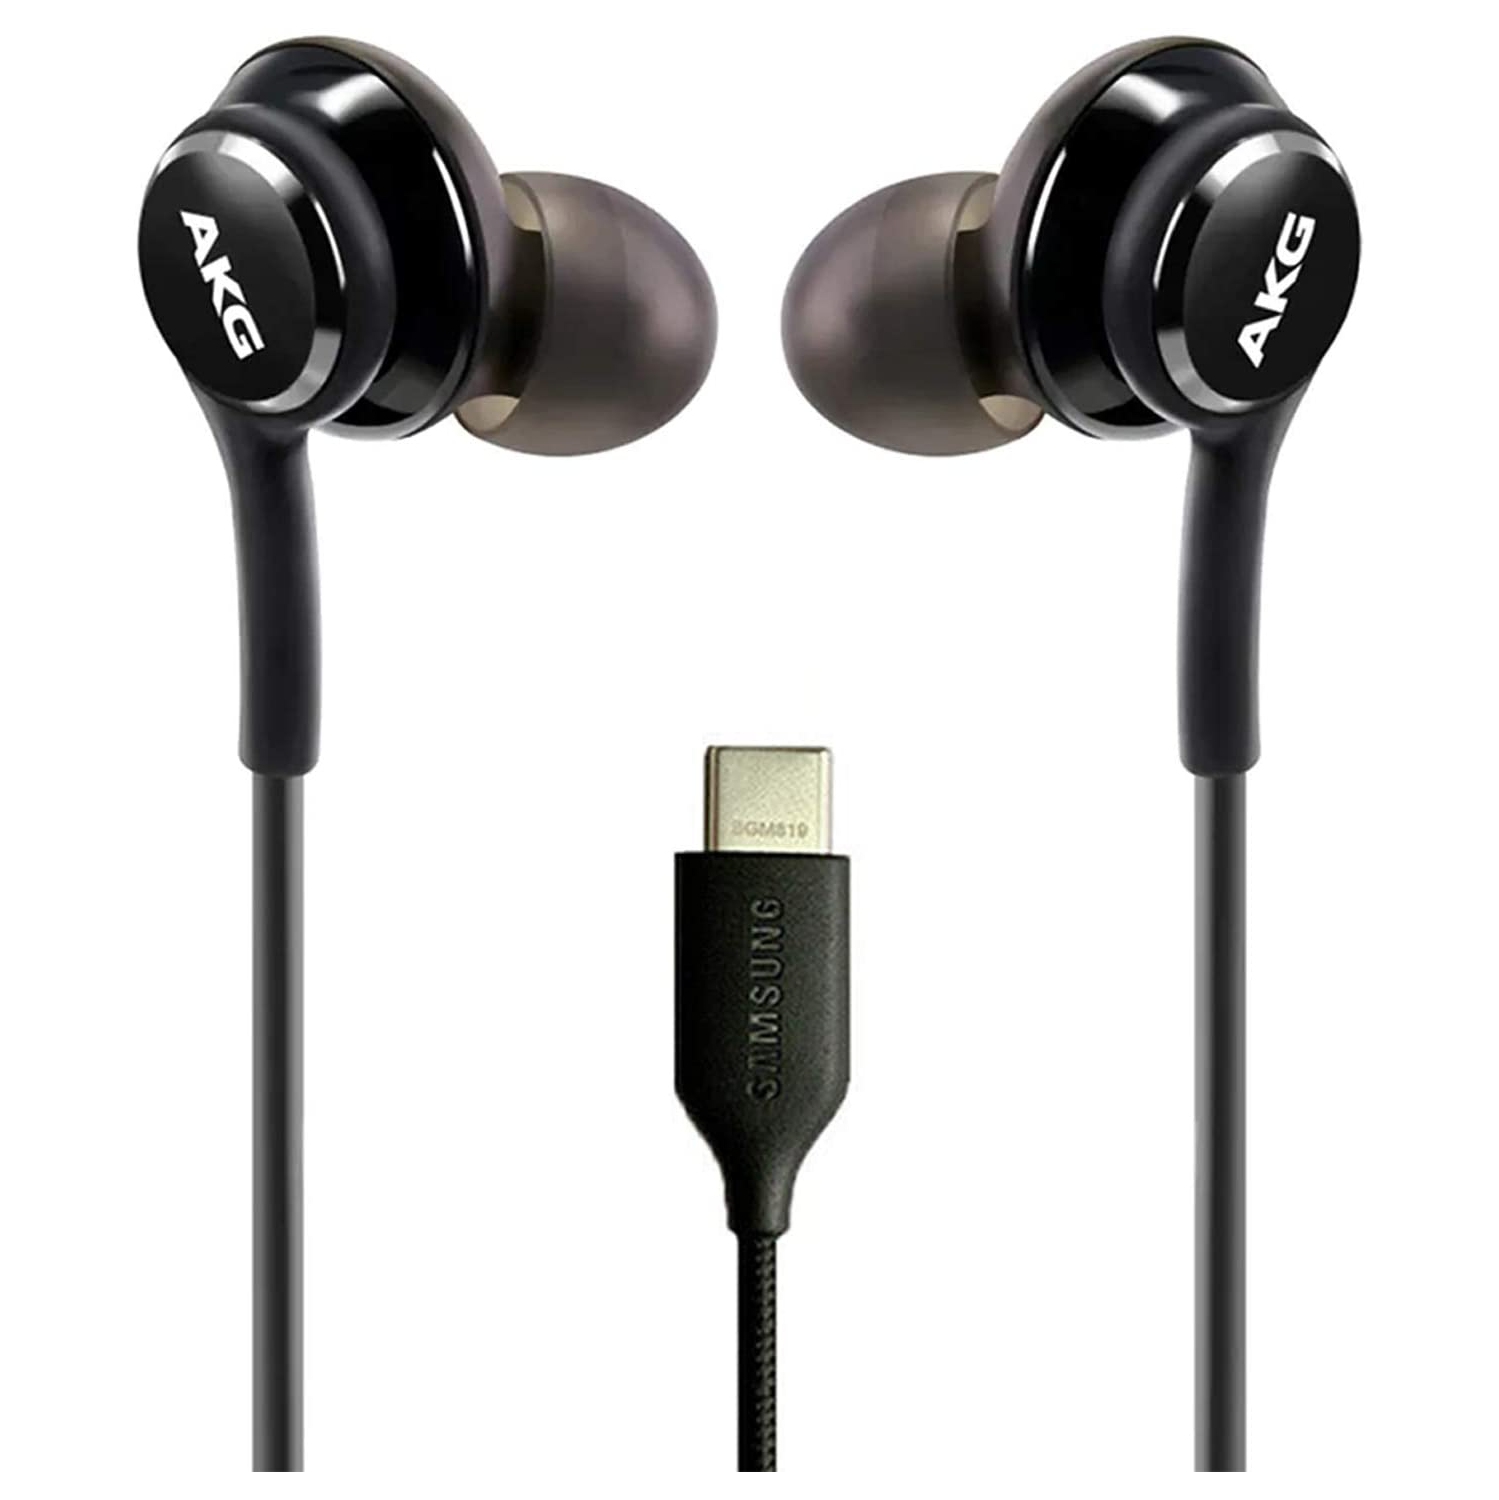 Type-c Earphones| USB AKG Earbuds Wired In-ear Headphones| SAMSUNG ORIGINAL| 2 PACK